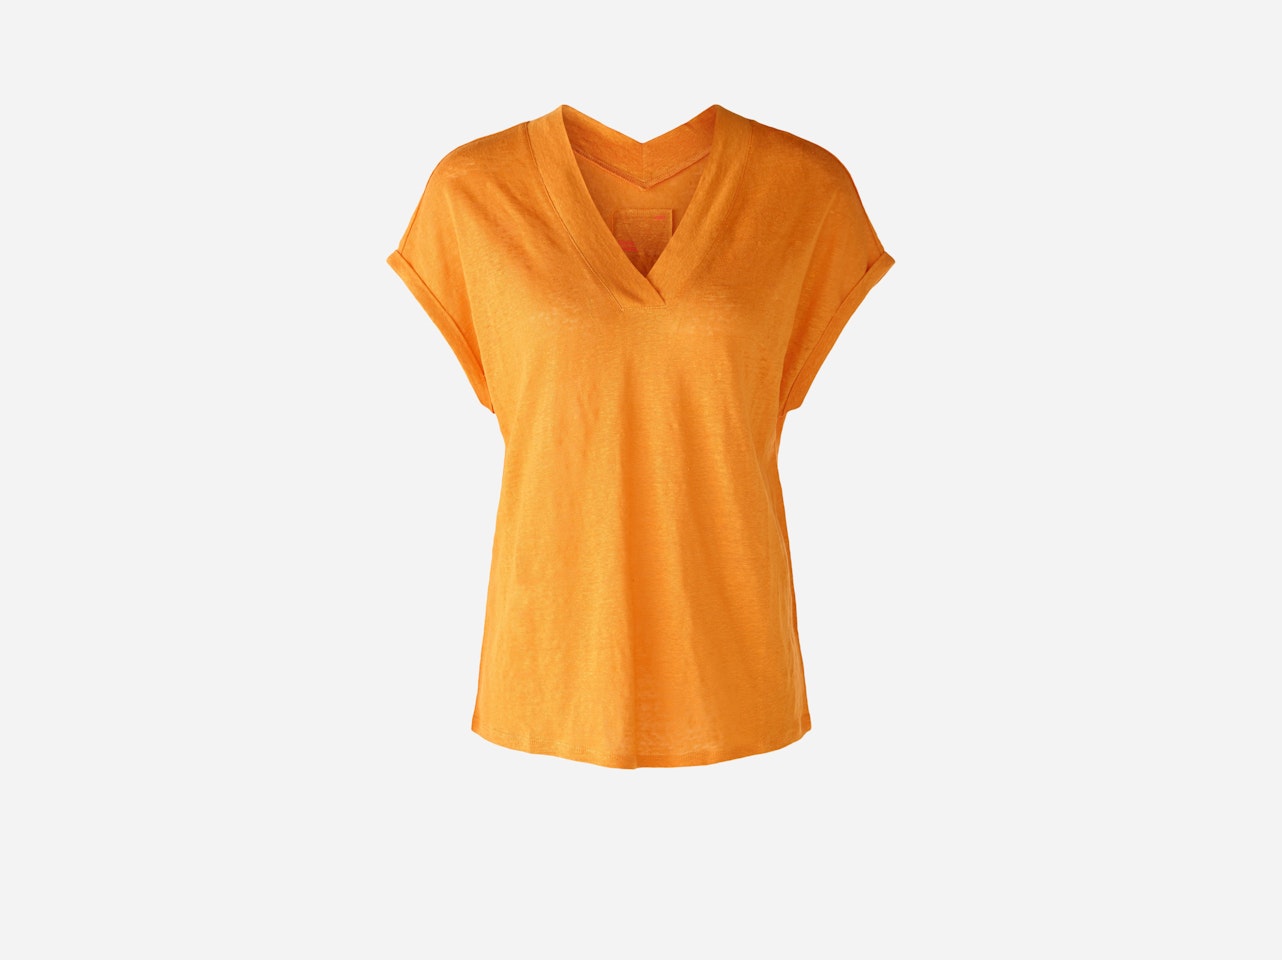 Bild 7 von T-shirt 100% linen in flame orange | Oui